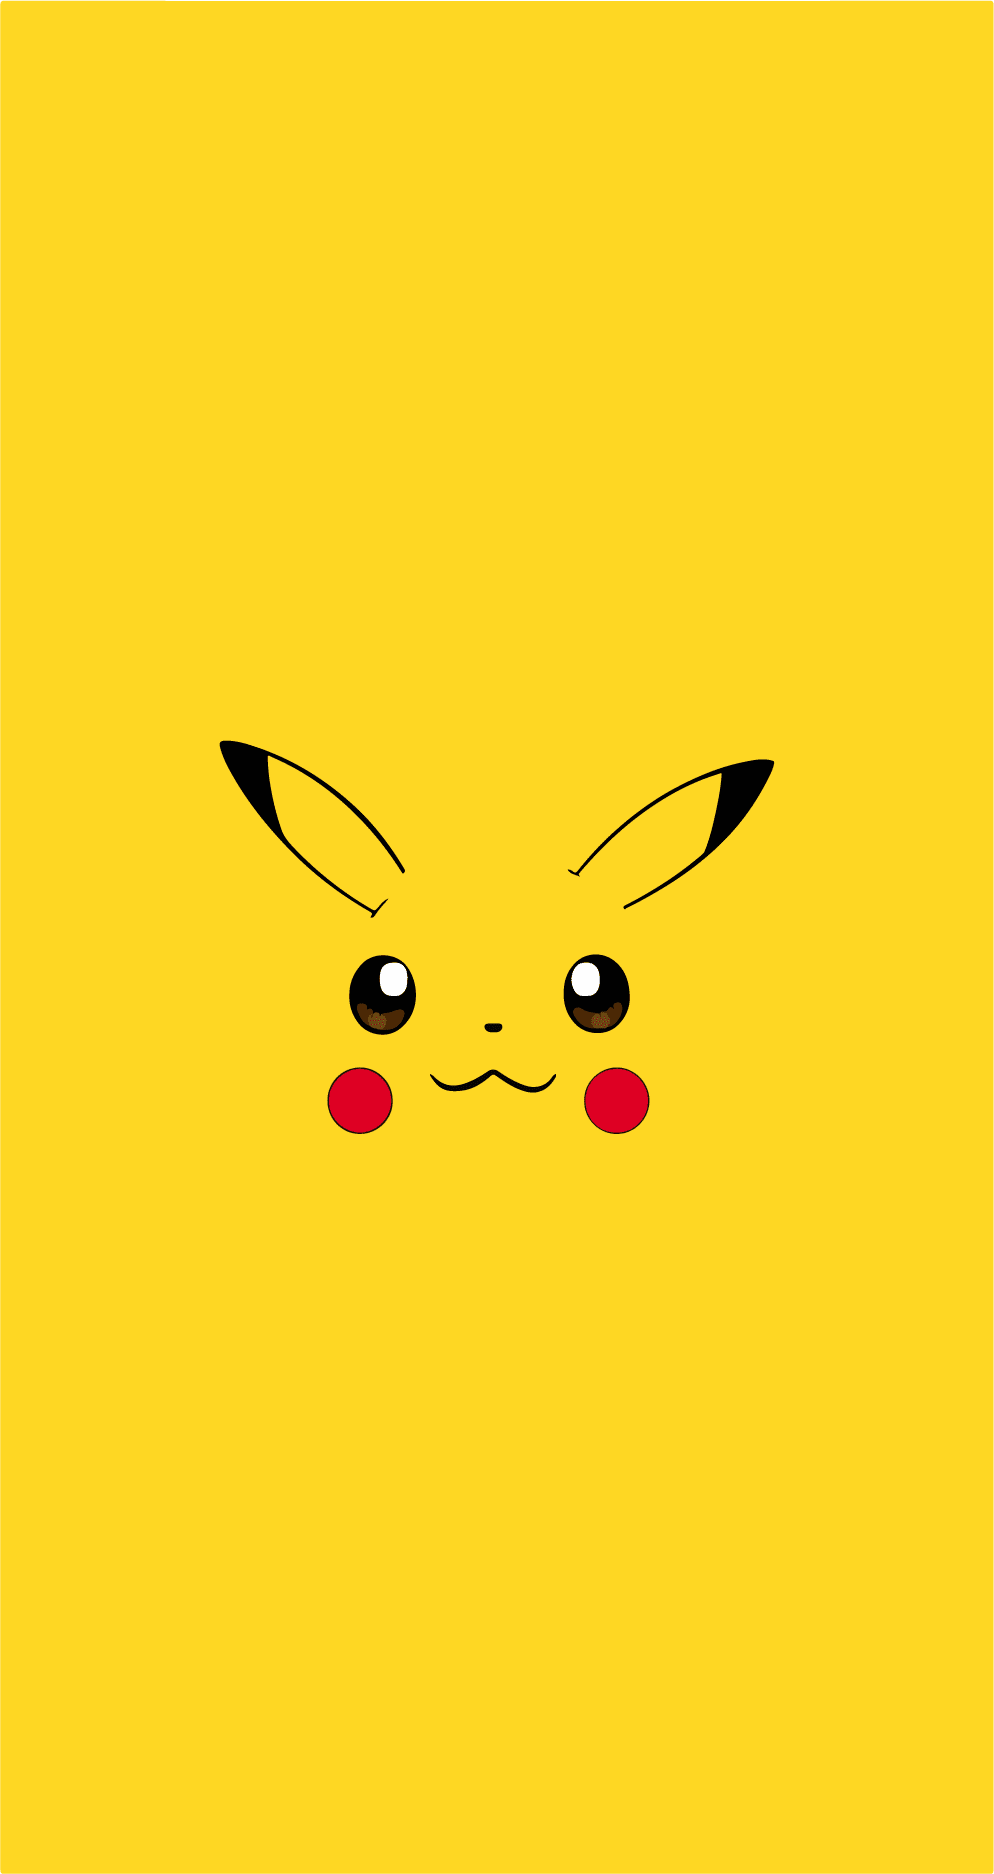 Pikachu - Pokémon Illustration